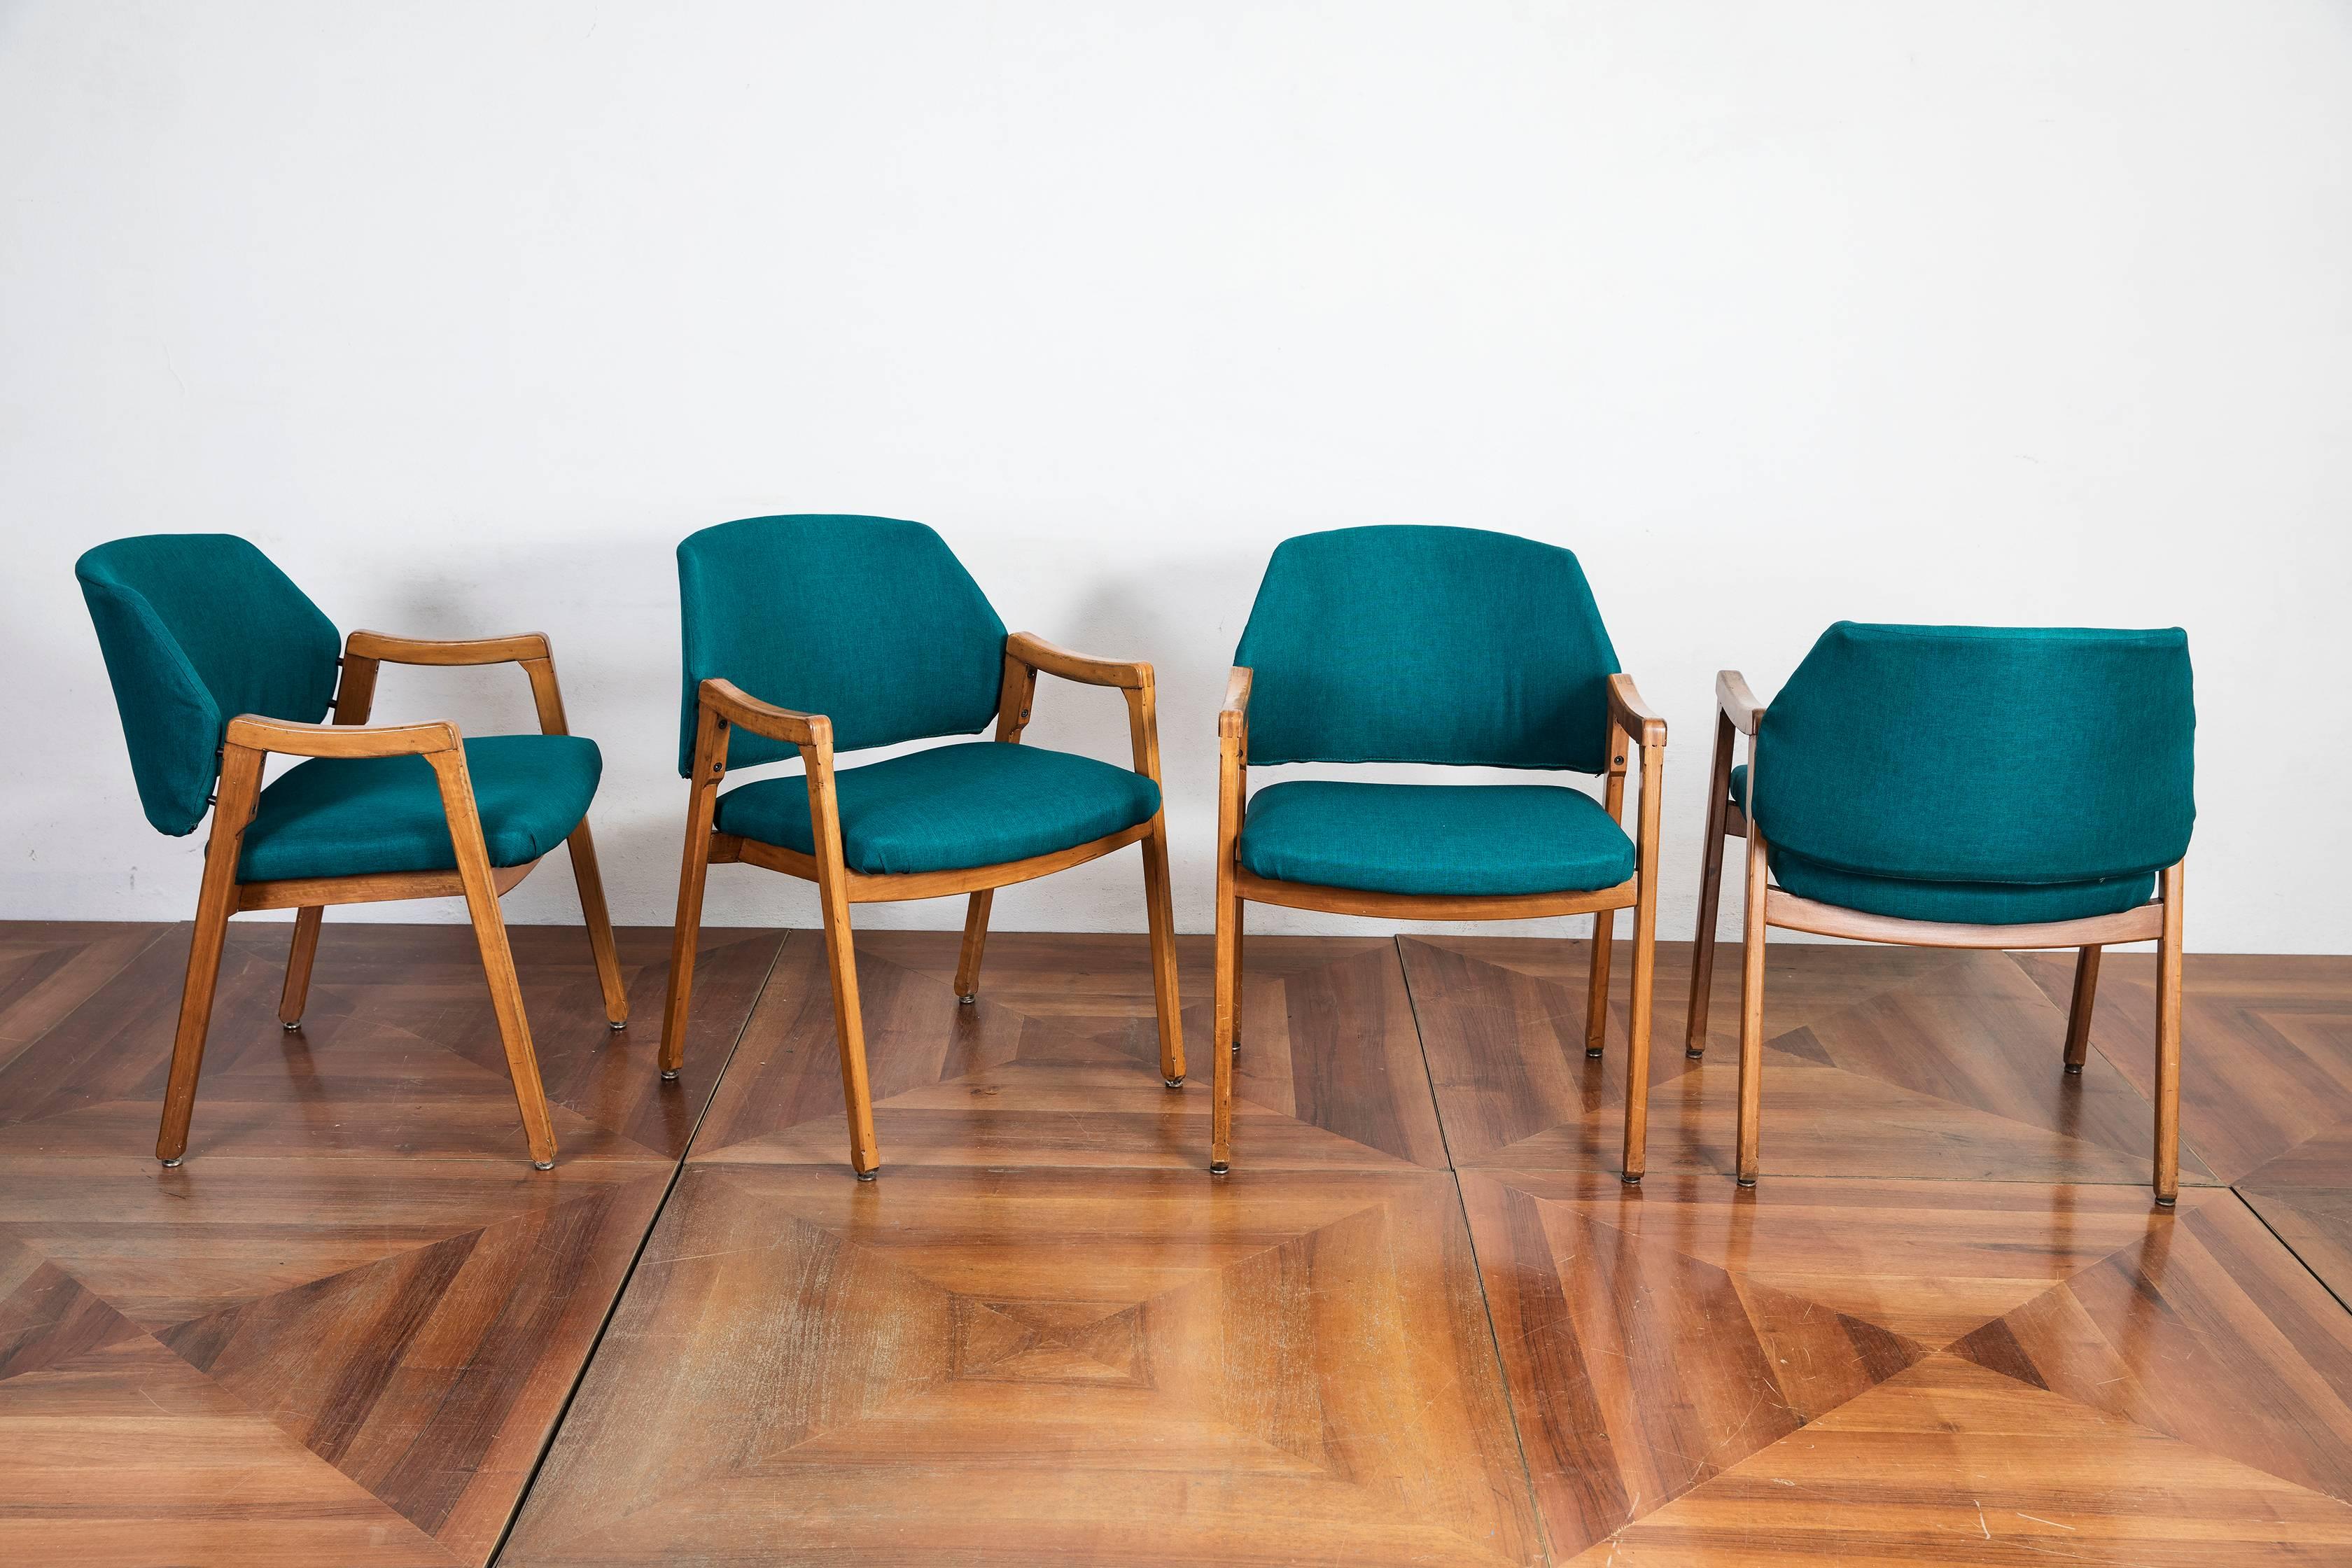 Set of four walnut dining chairs designed by Ico e Luisa Parisi for Cassina in 1961, model n.814, originally made for Hotel Lorena in Grosseto, Italy.

Literature
Giuliana Gramigna, Repertorio del design italiano 1950-2000 per l'arredamento